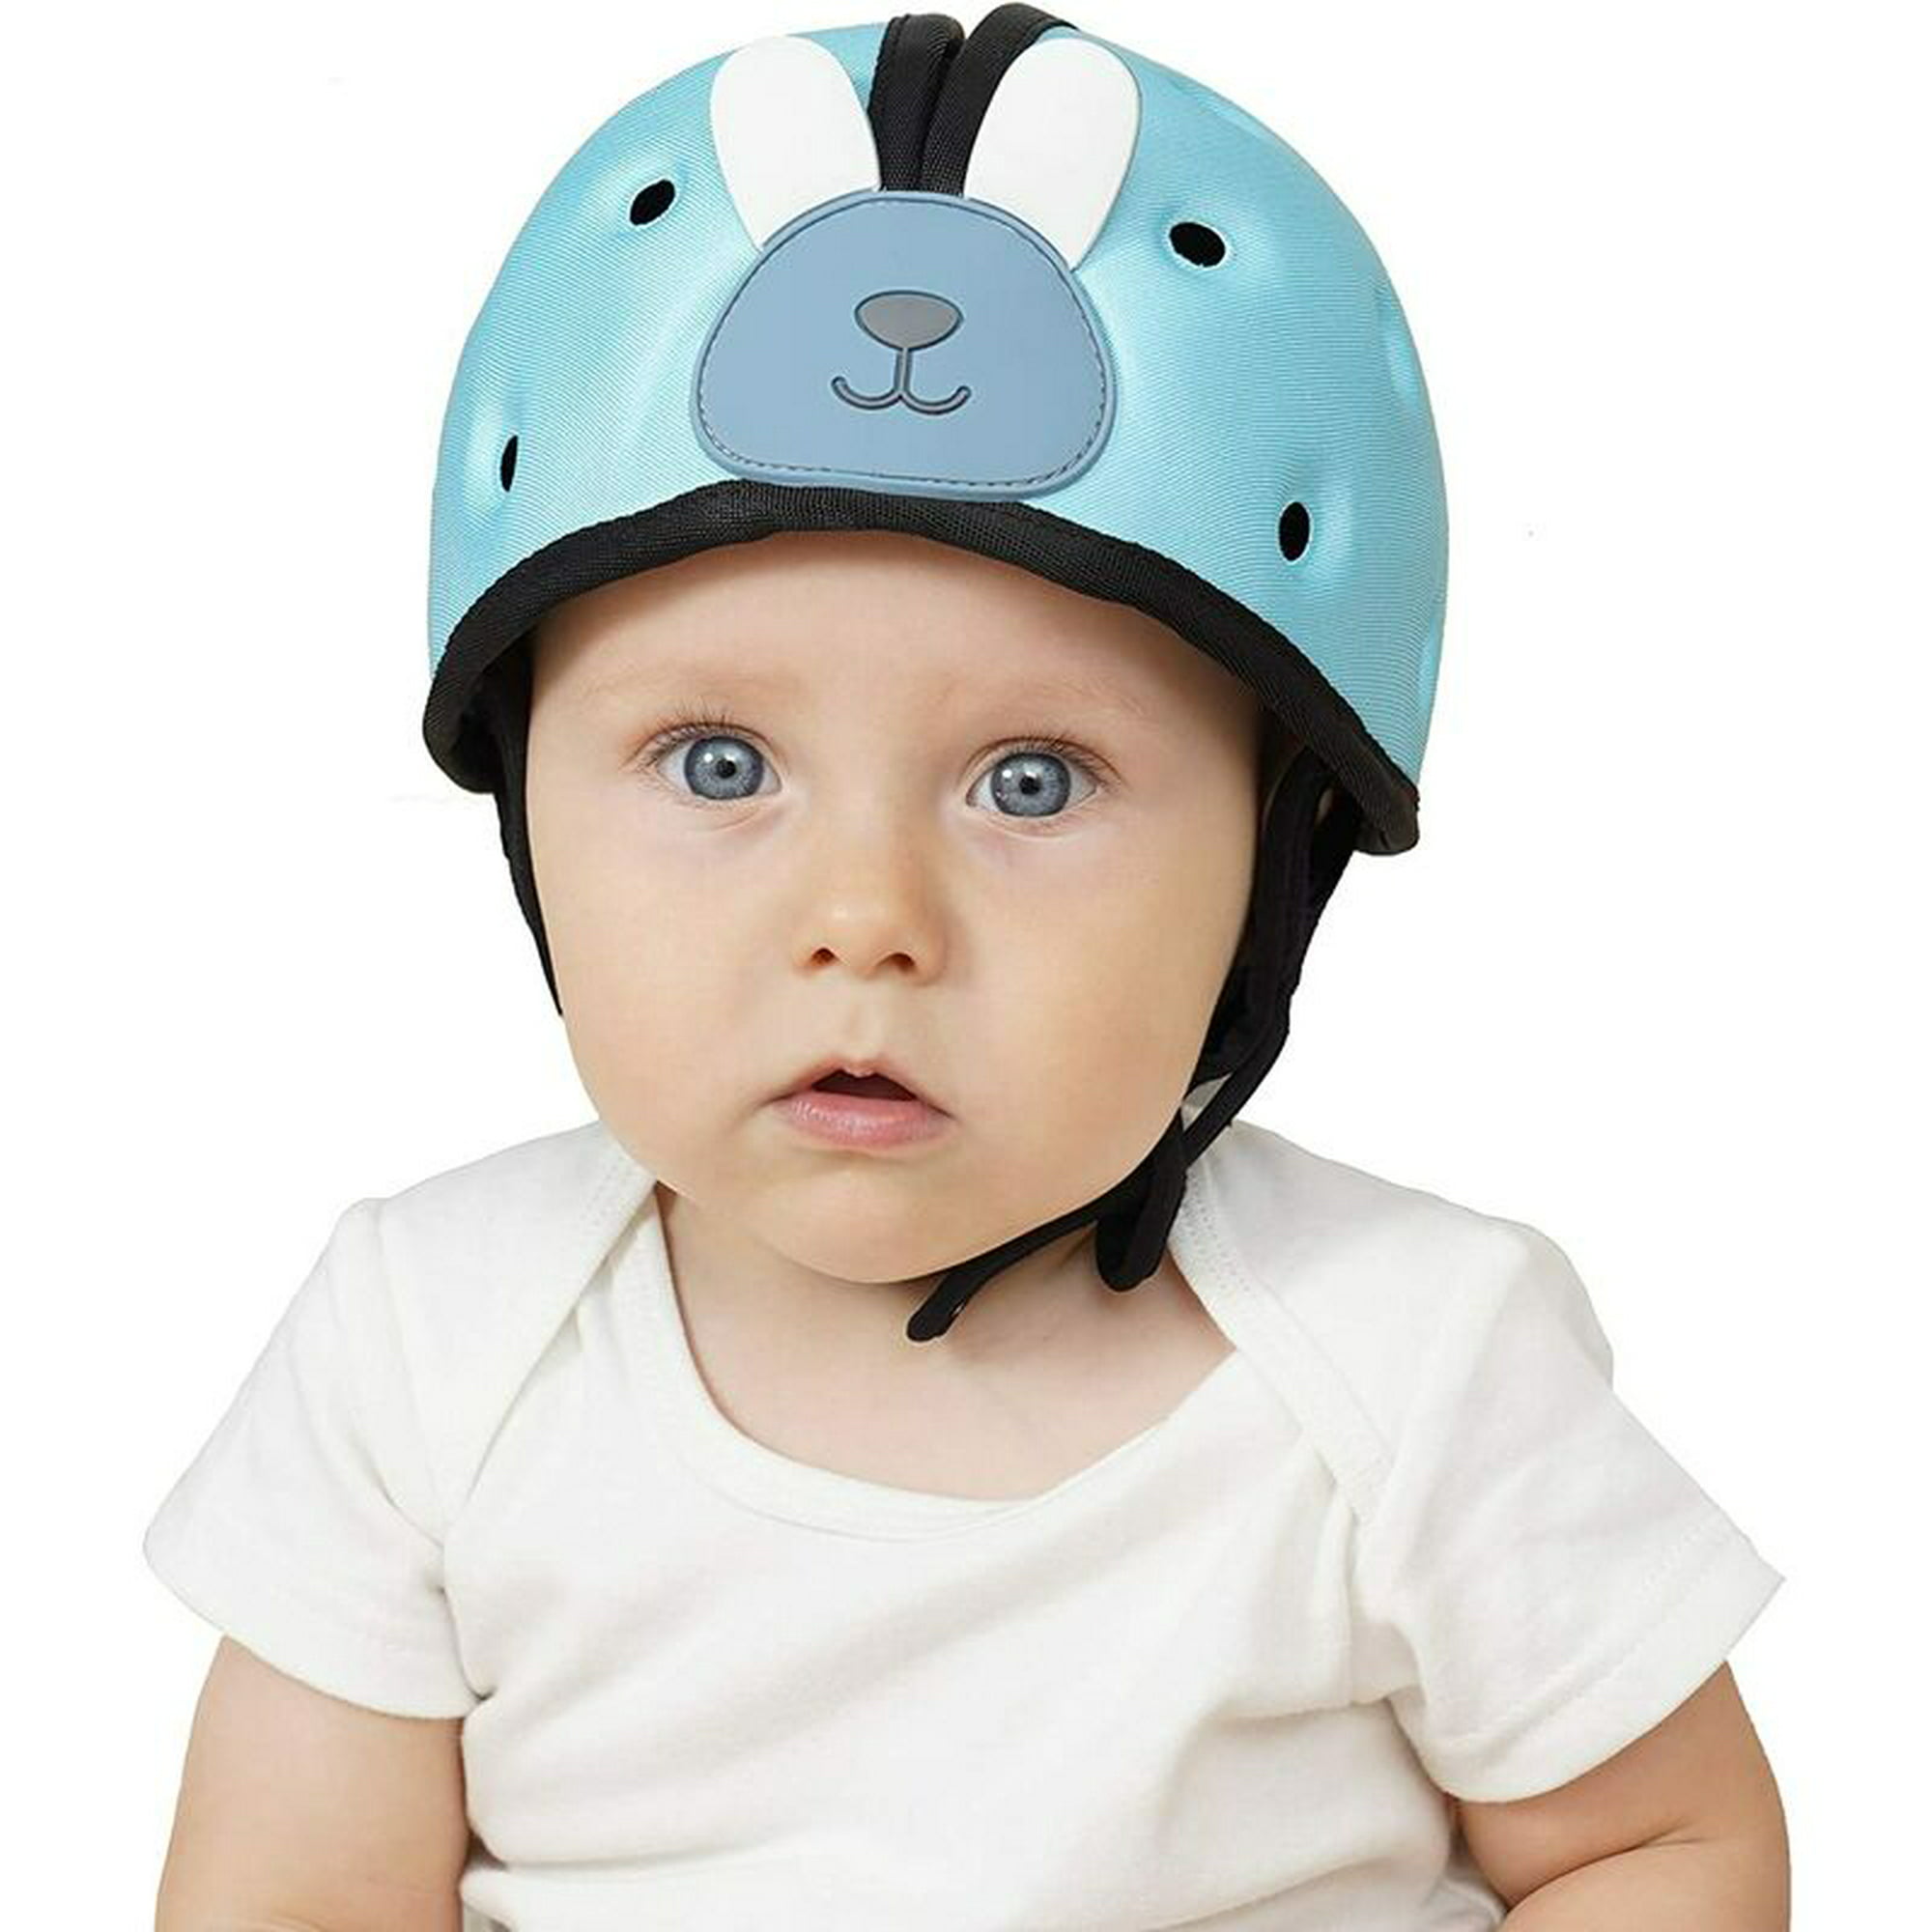 Gorro o casco de protección anticolisión para bebé, para la cabeza,  ajustable, prevención de golpes. Color Gris, UNITALLA BEBE : .com.mx:  Bebé